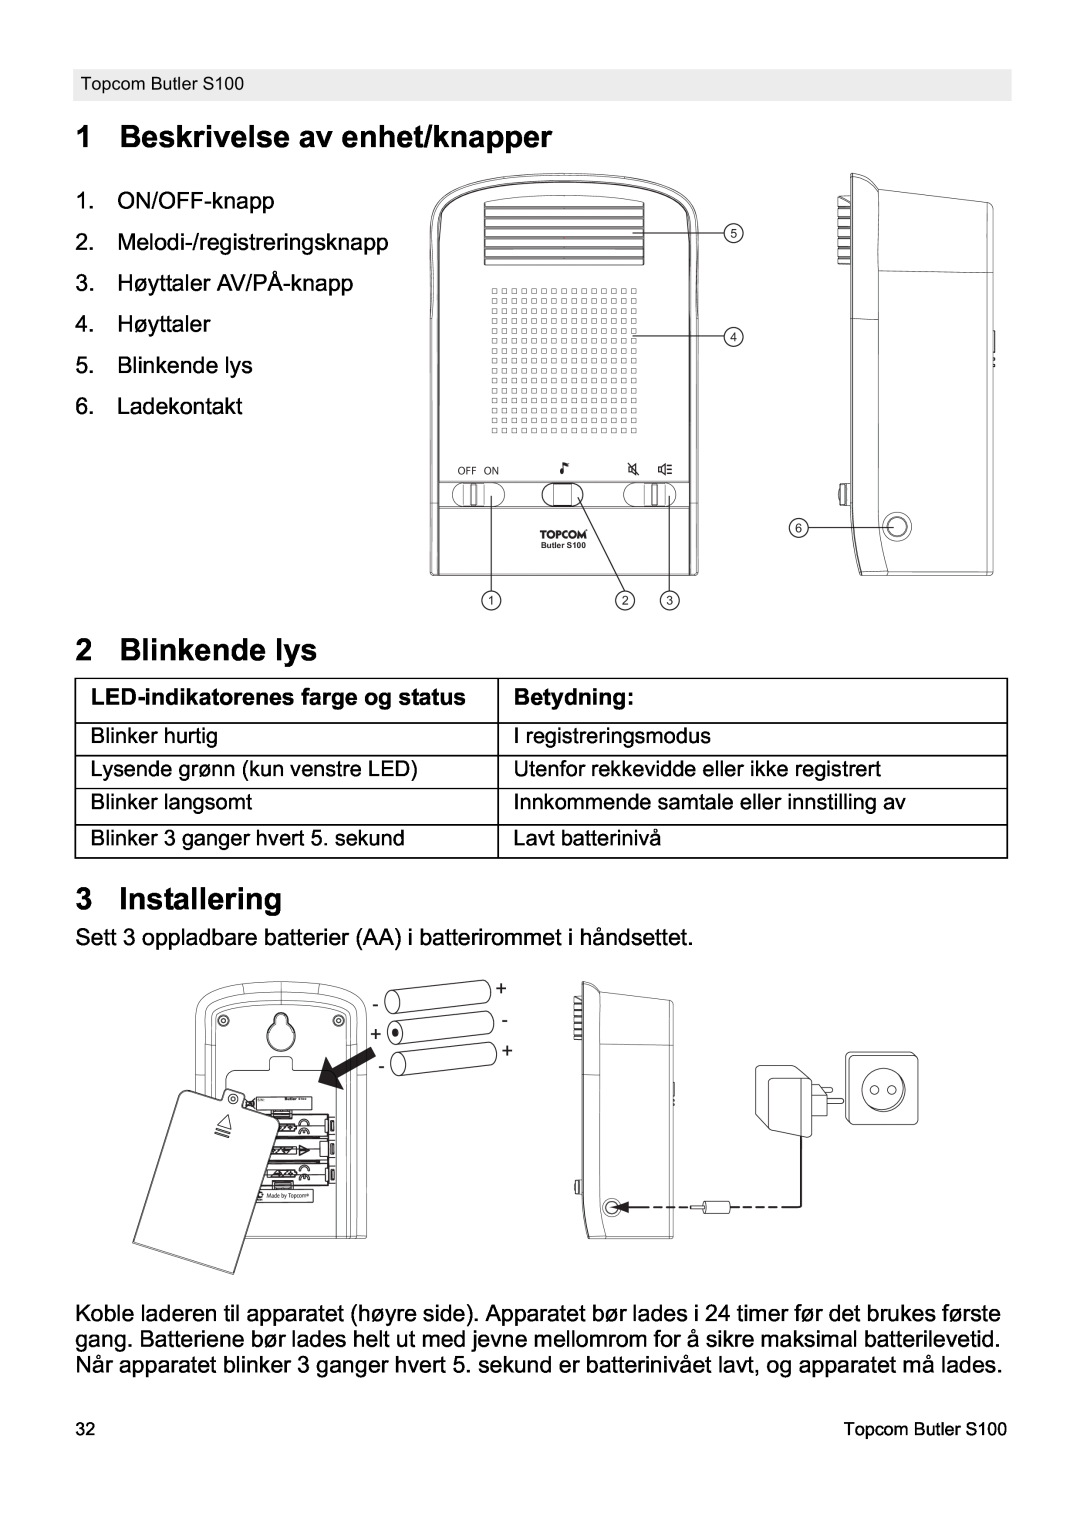 Topcom S100 manual do utilizador Beskrivelse av enhet/knapper, Blinkende lys, Installering 